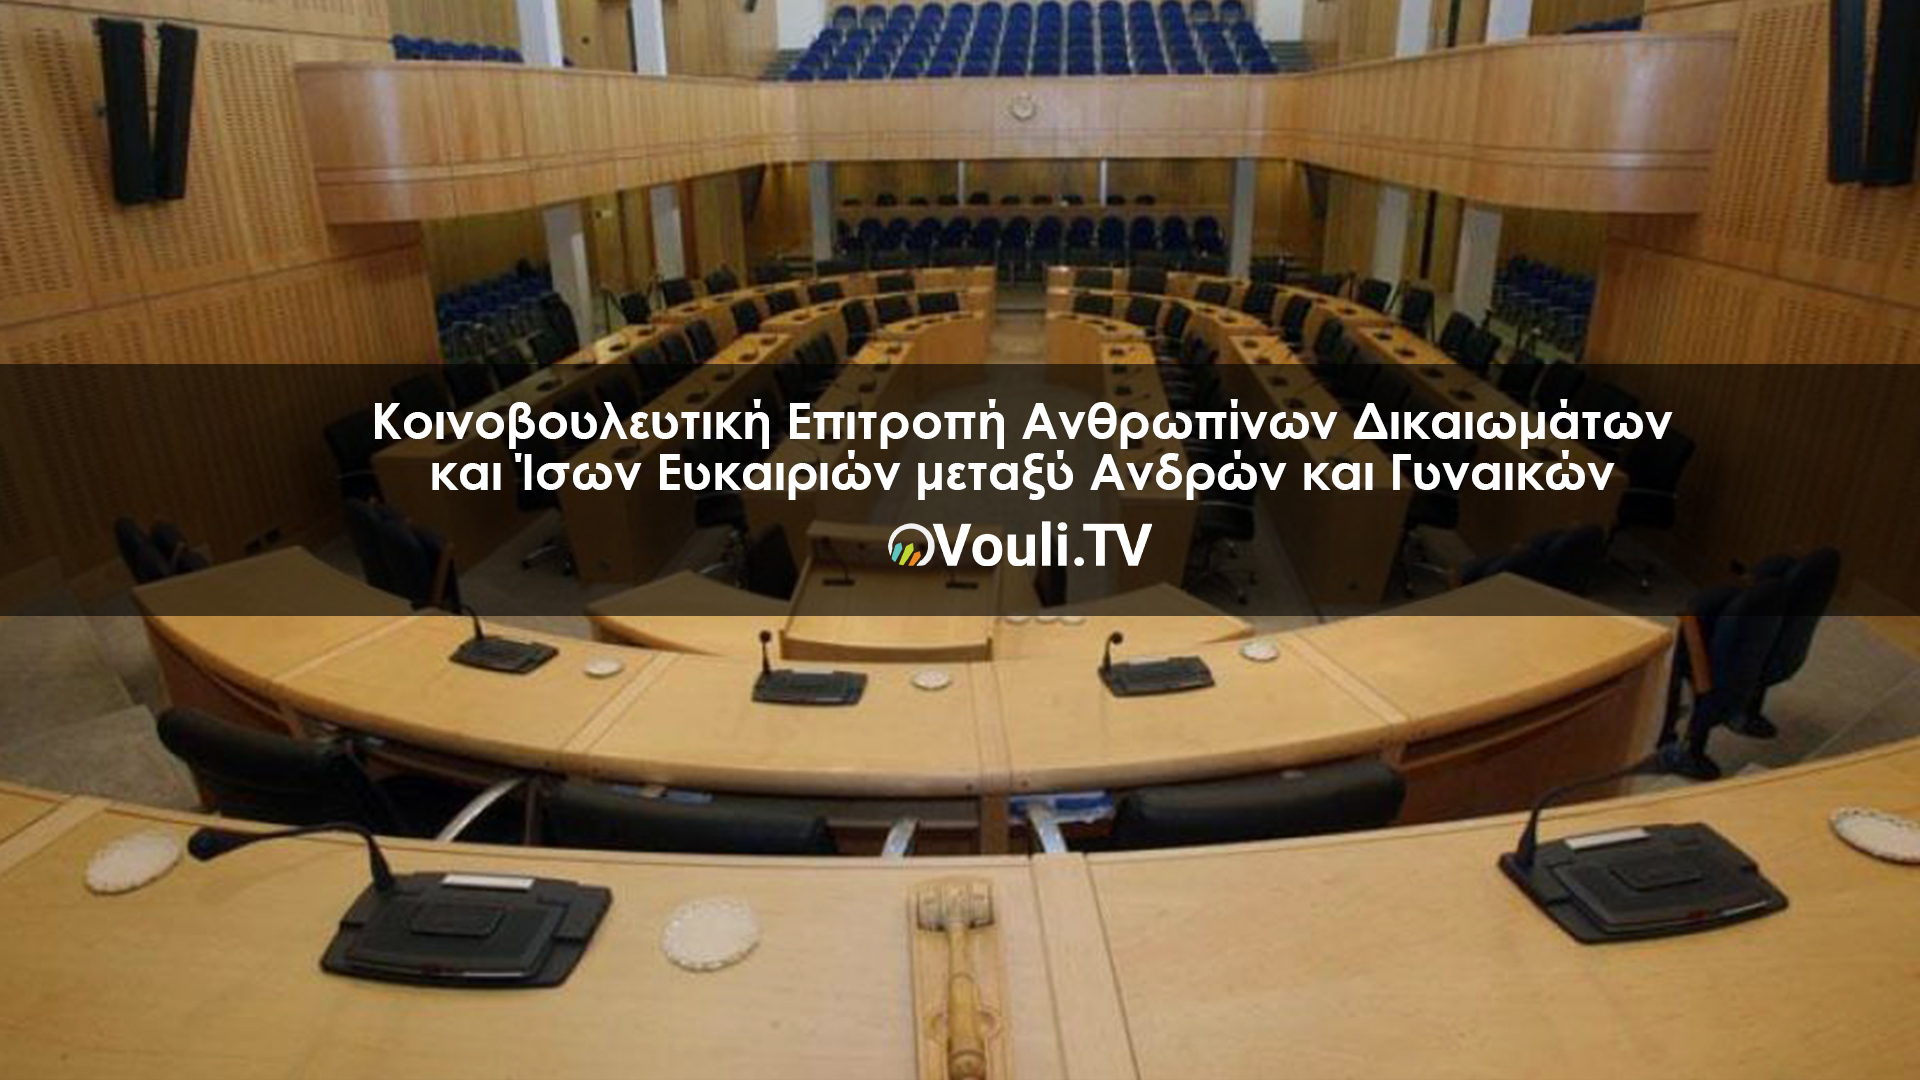 Κοινοβουλευτική Επιτροπή Ανθρωπίνων Δικαιωμάτων και Ίσων Ευκαιριών μεταξύ Ανδρών και Γυναικών | Vouli report 31/01/2022